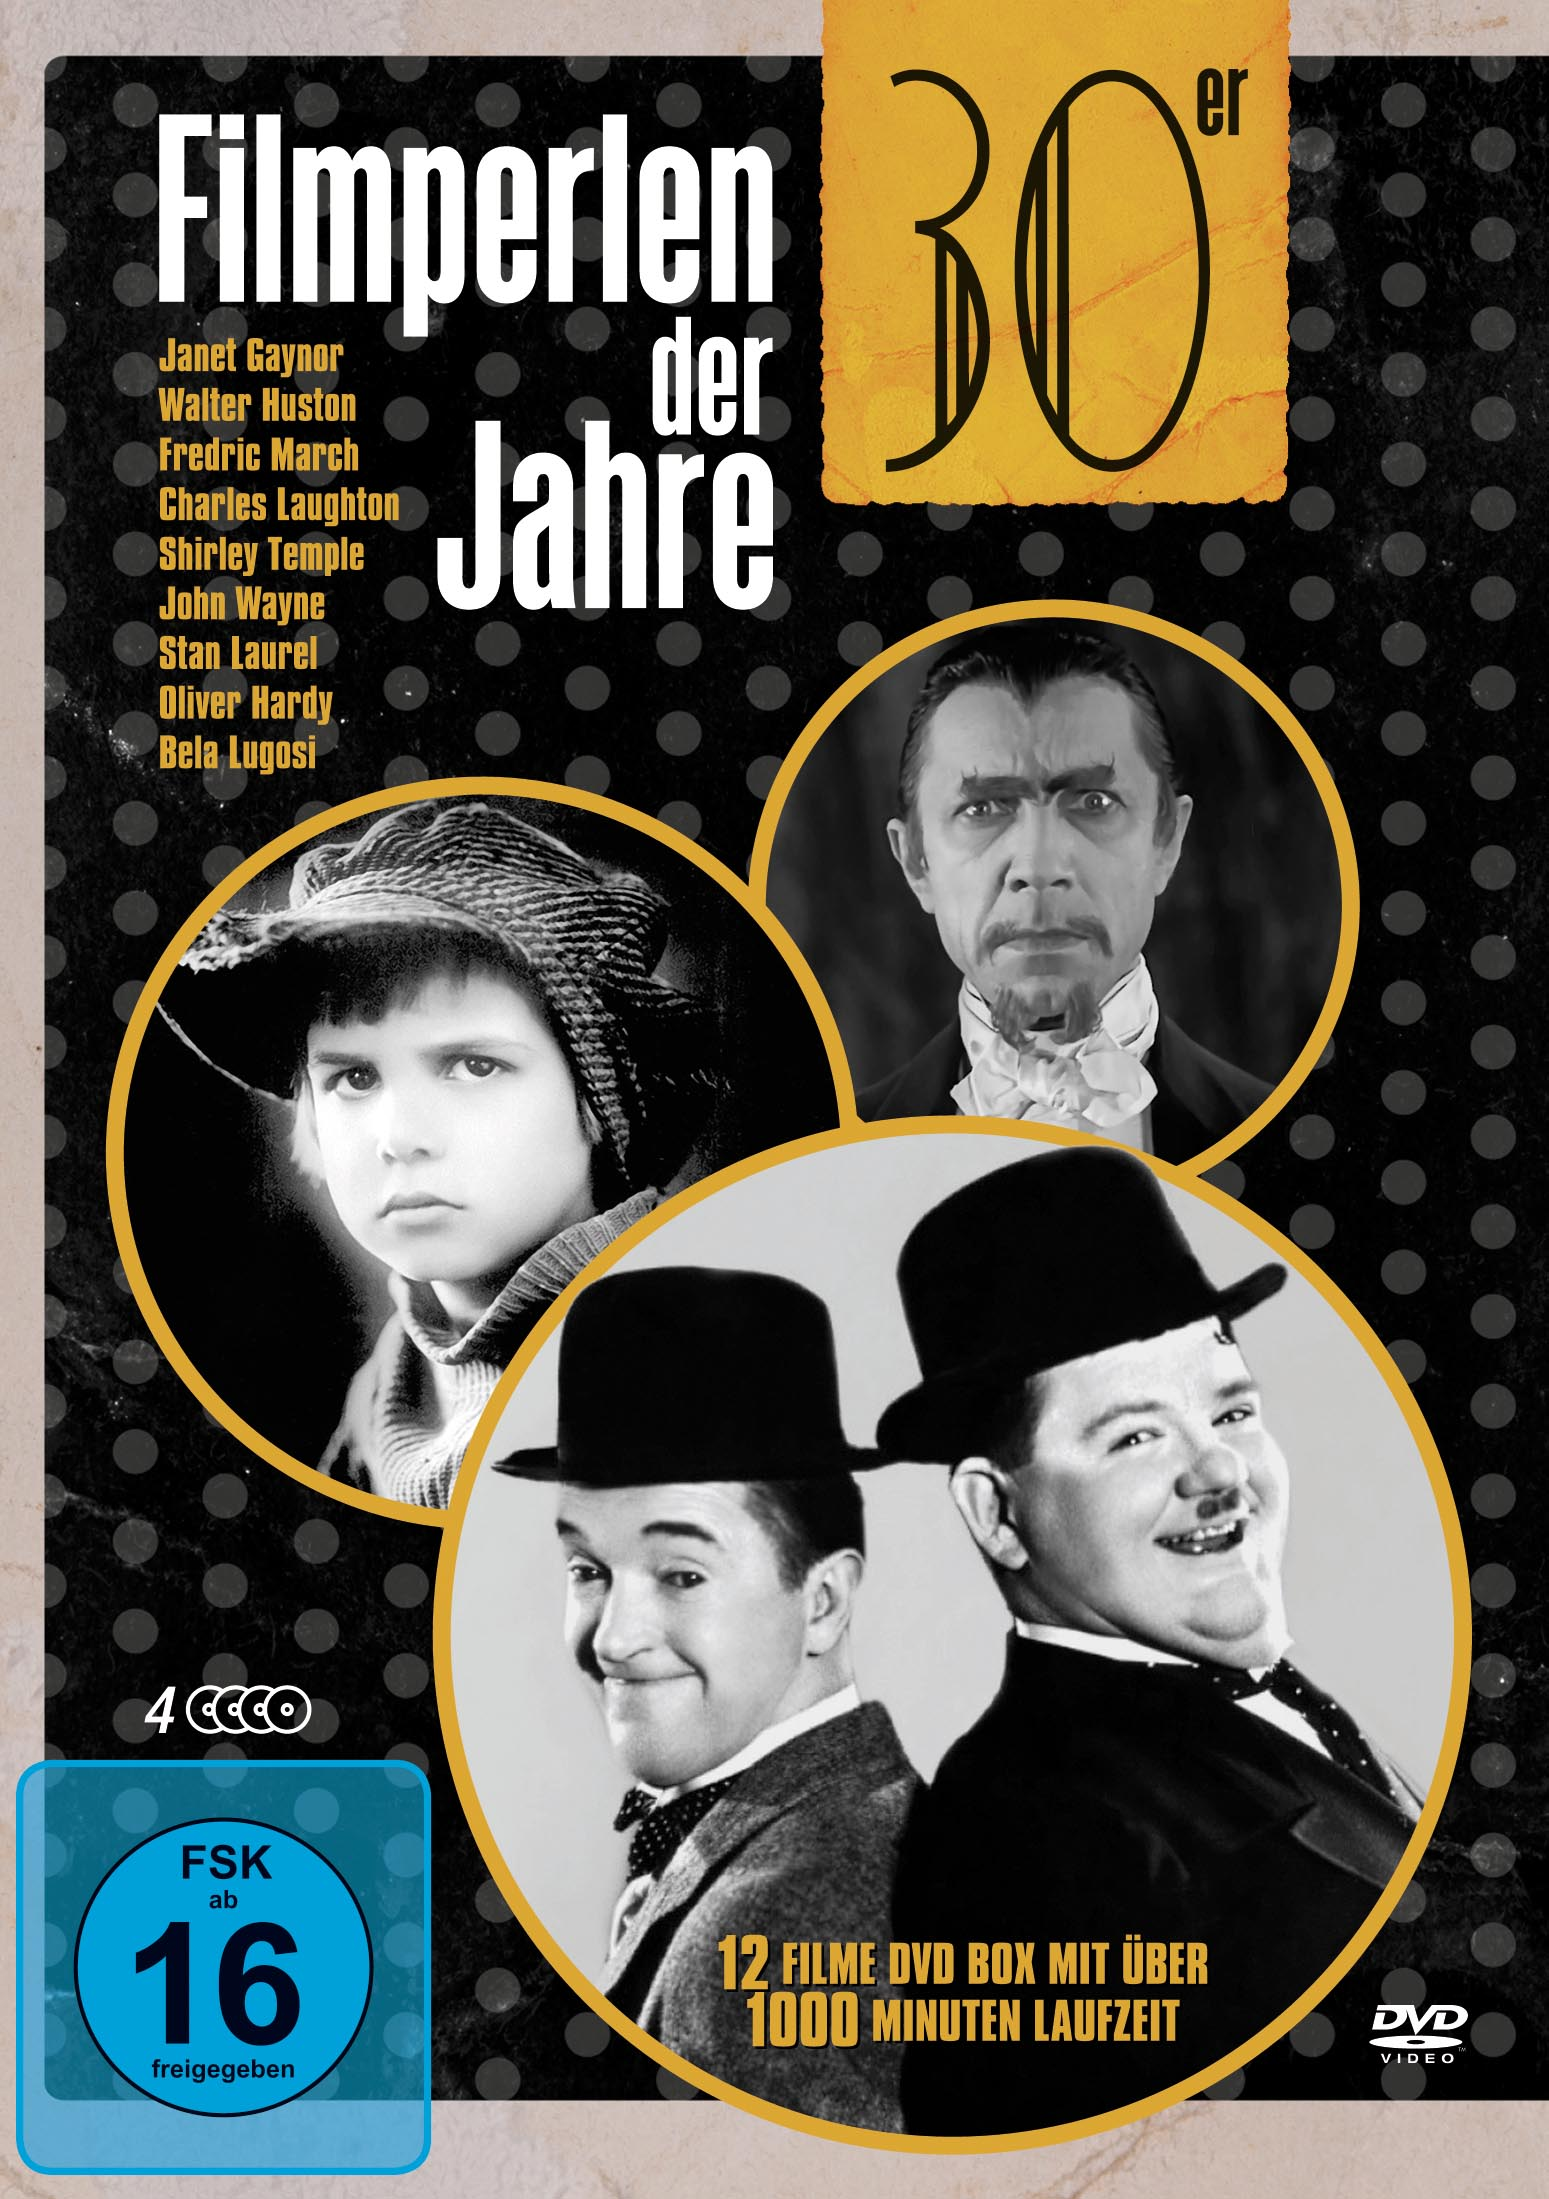 DVD Box 30er Jahre-Deluxe Der DVDS) Filmperlen (4